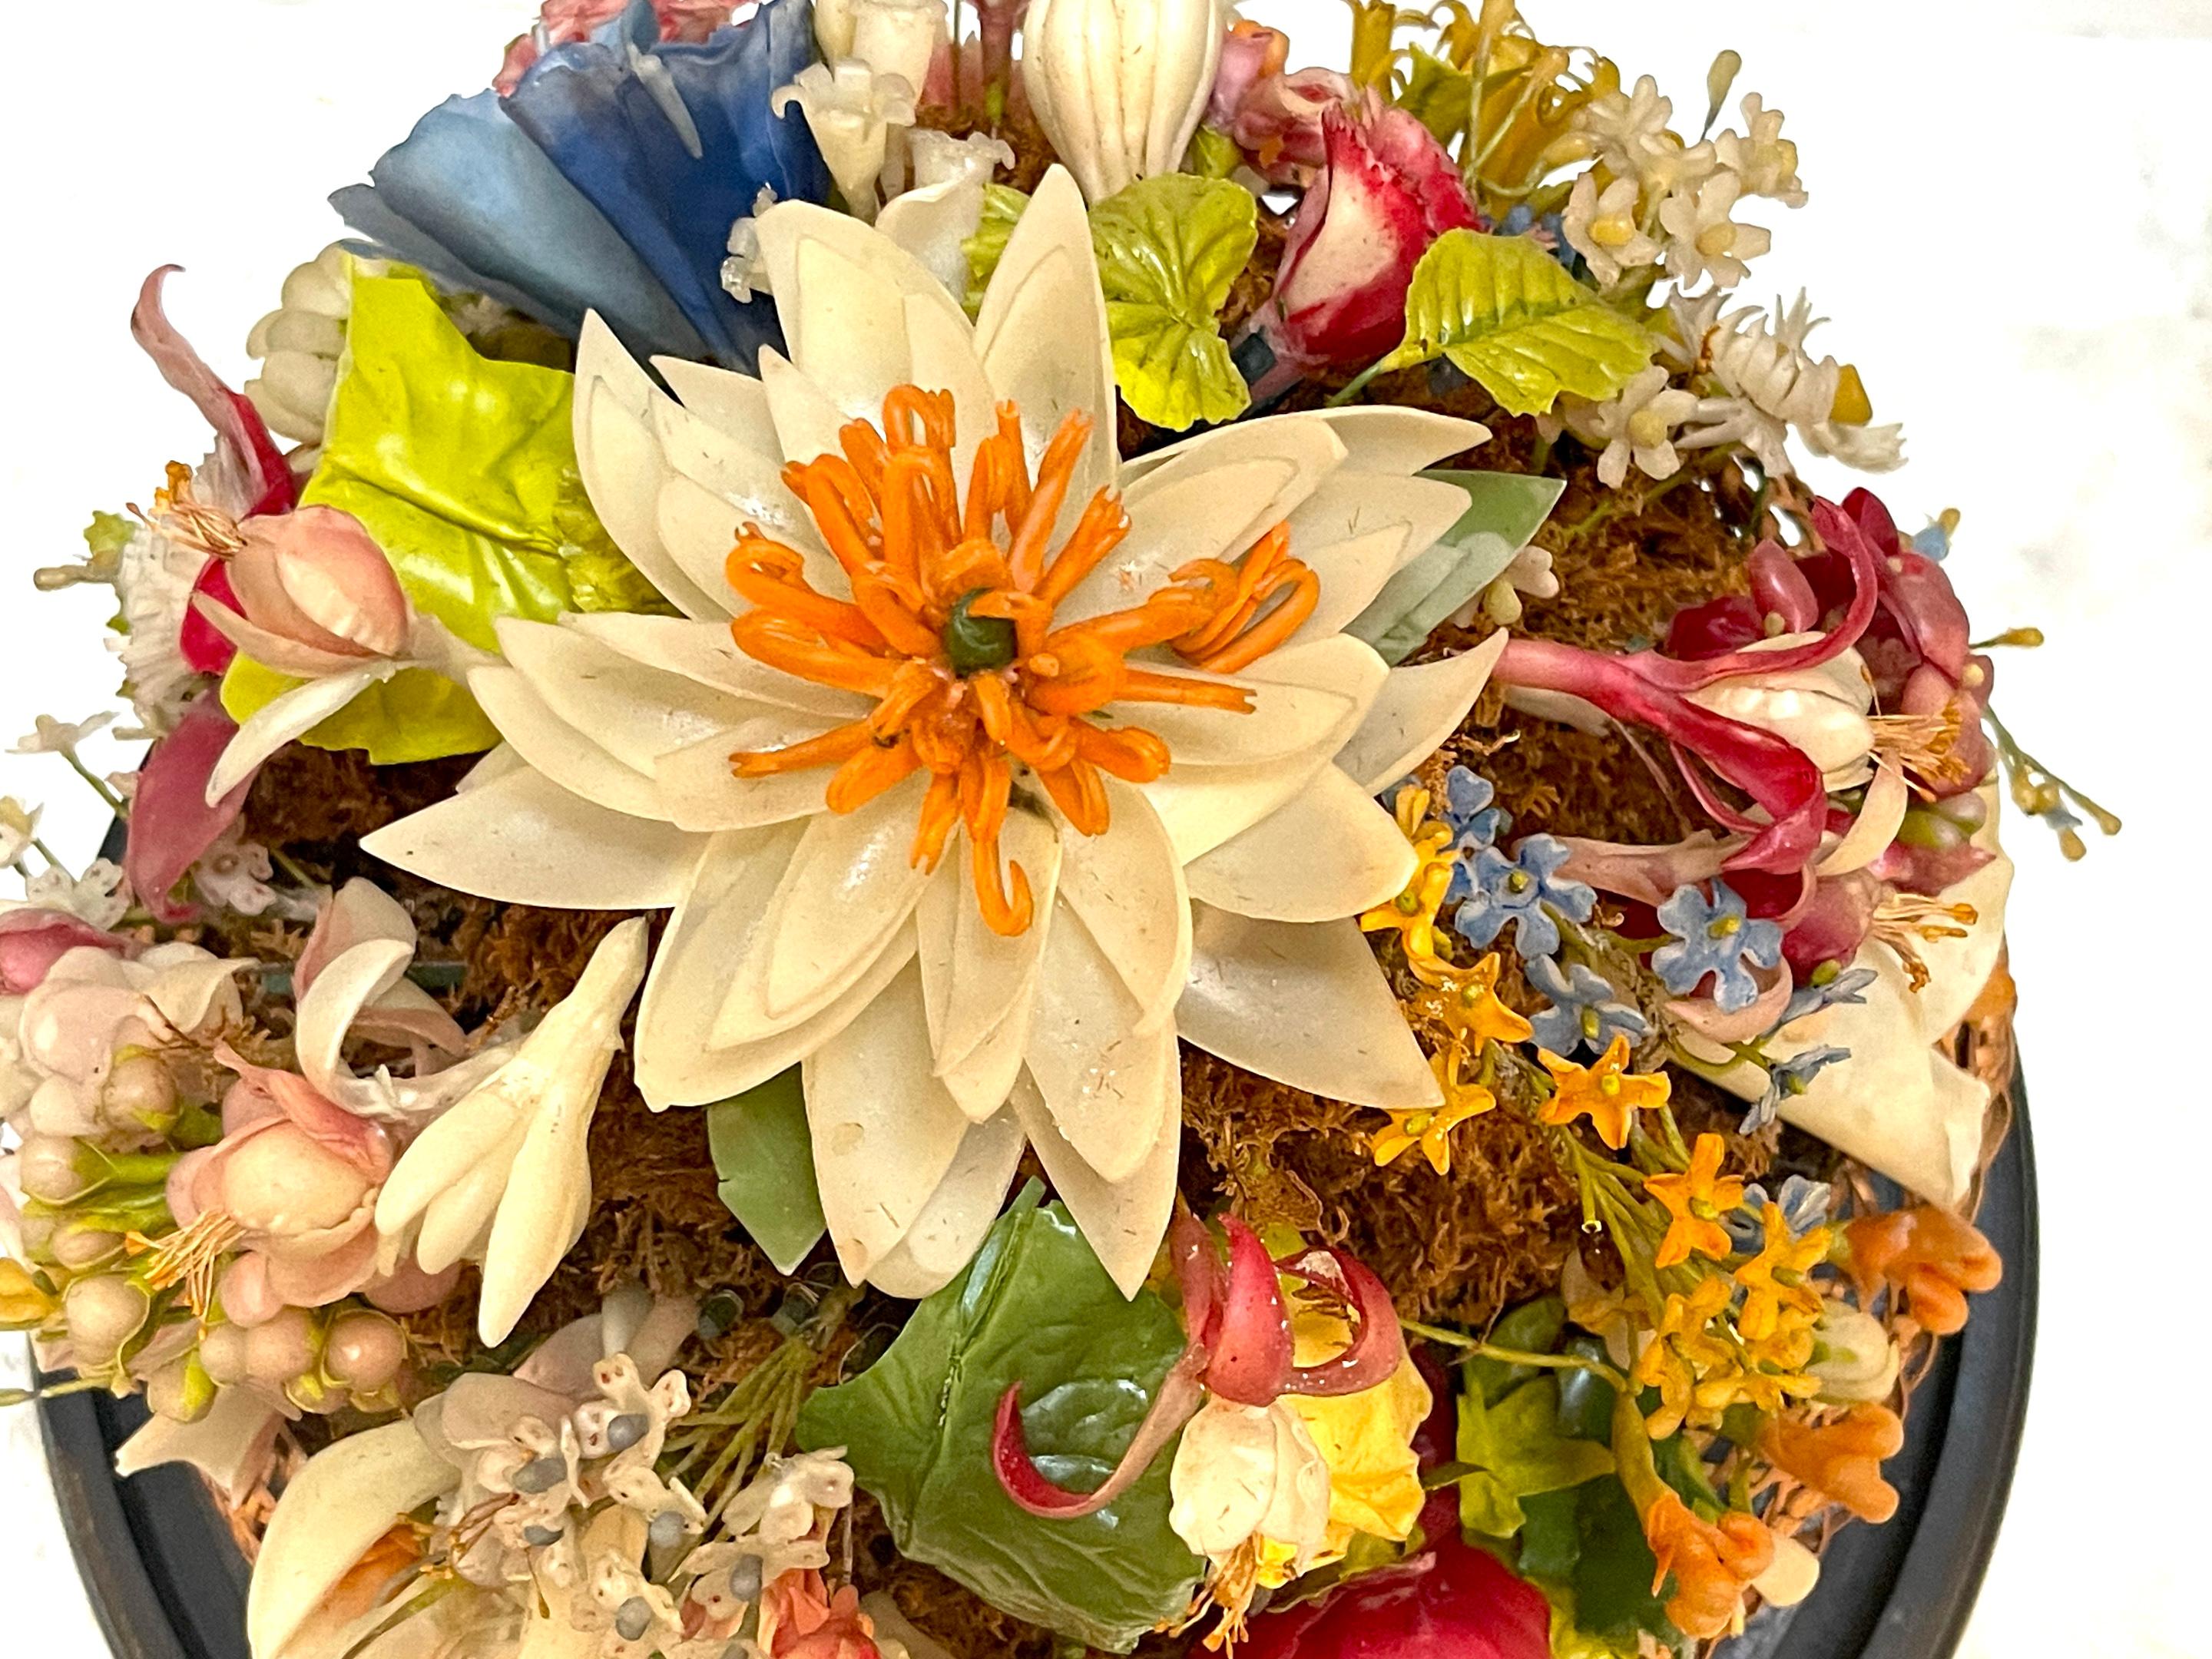 Victorian Wax Flower Still Life Basket Under Round Glass Dome For Sale 5